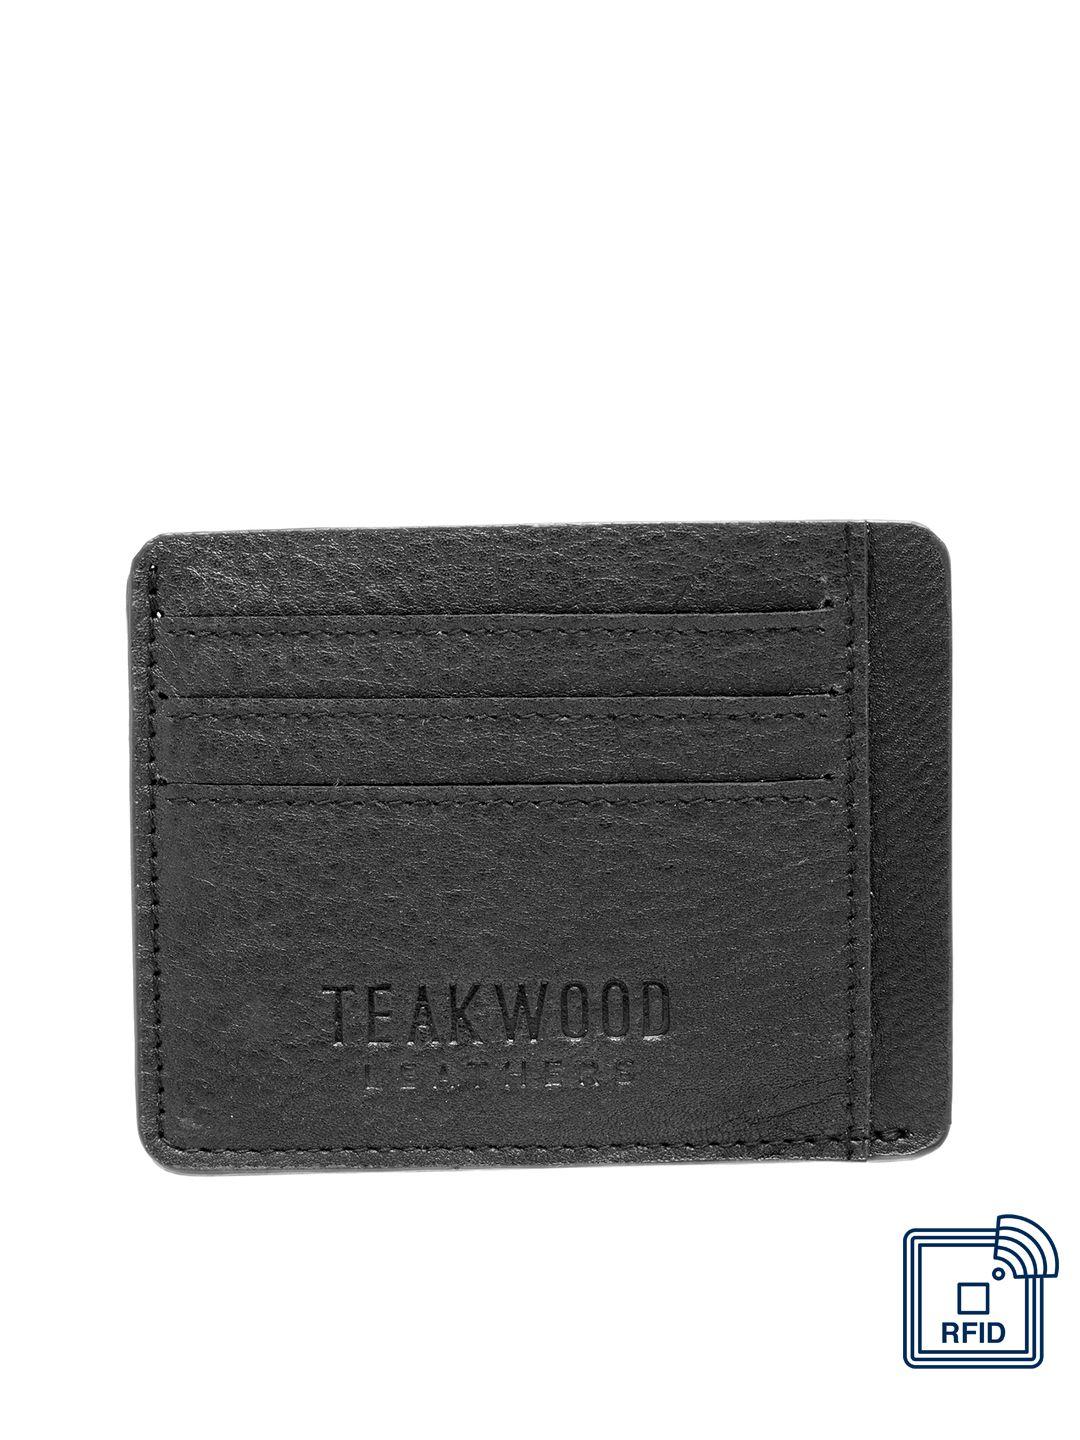 teakwood leathers men black solid card holder